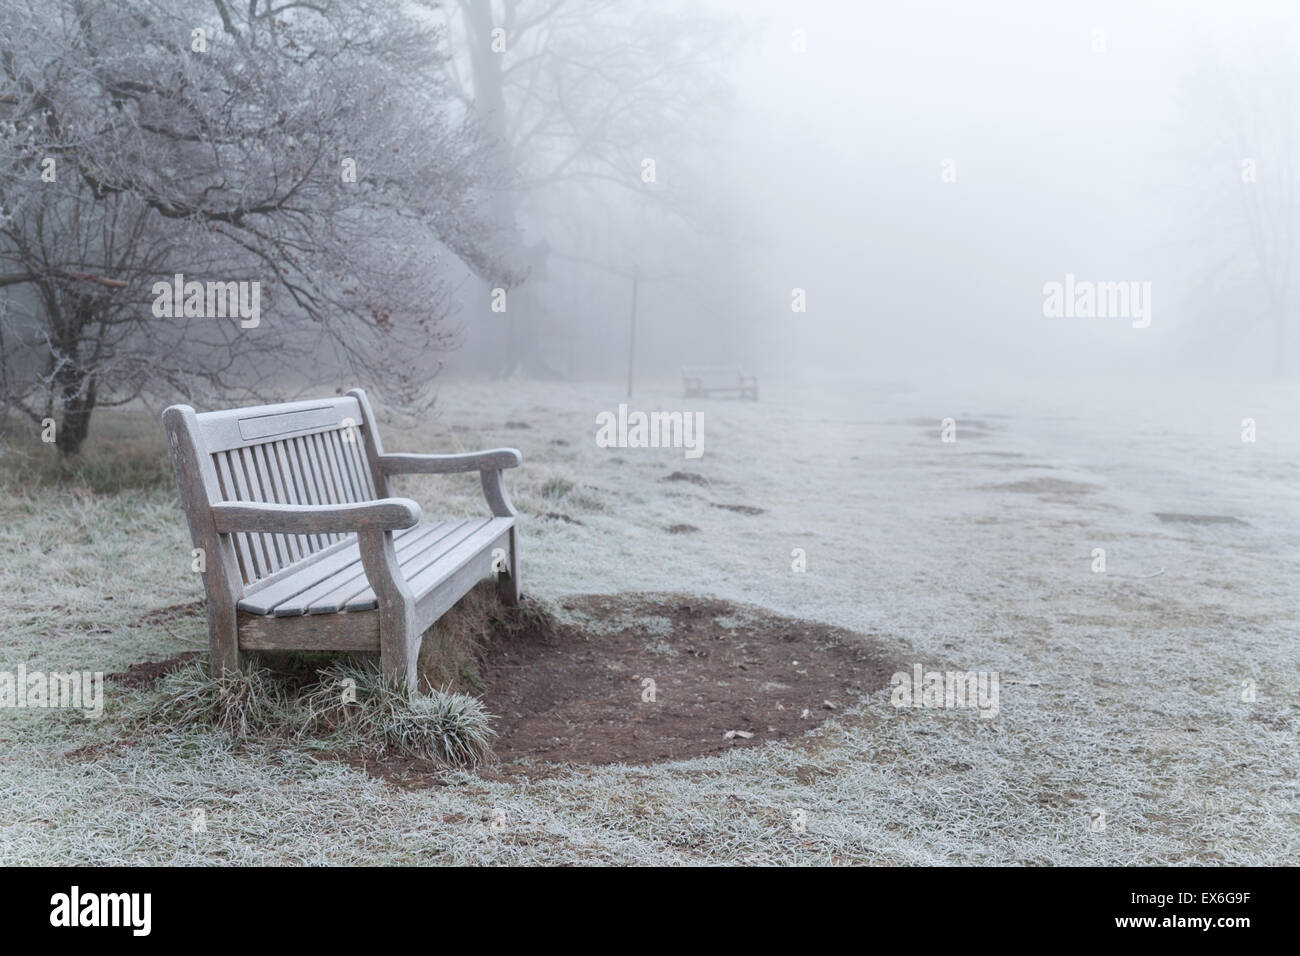 Banco di nebbia immagini e fotografie stock ad alta risoluzione - Alamy